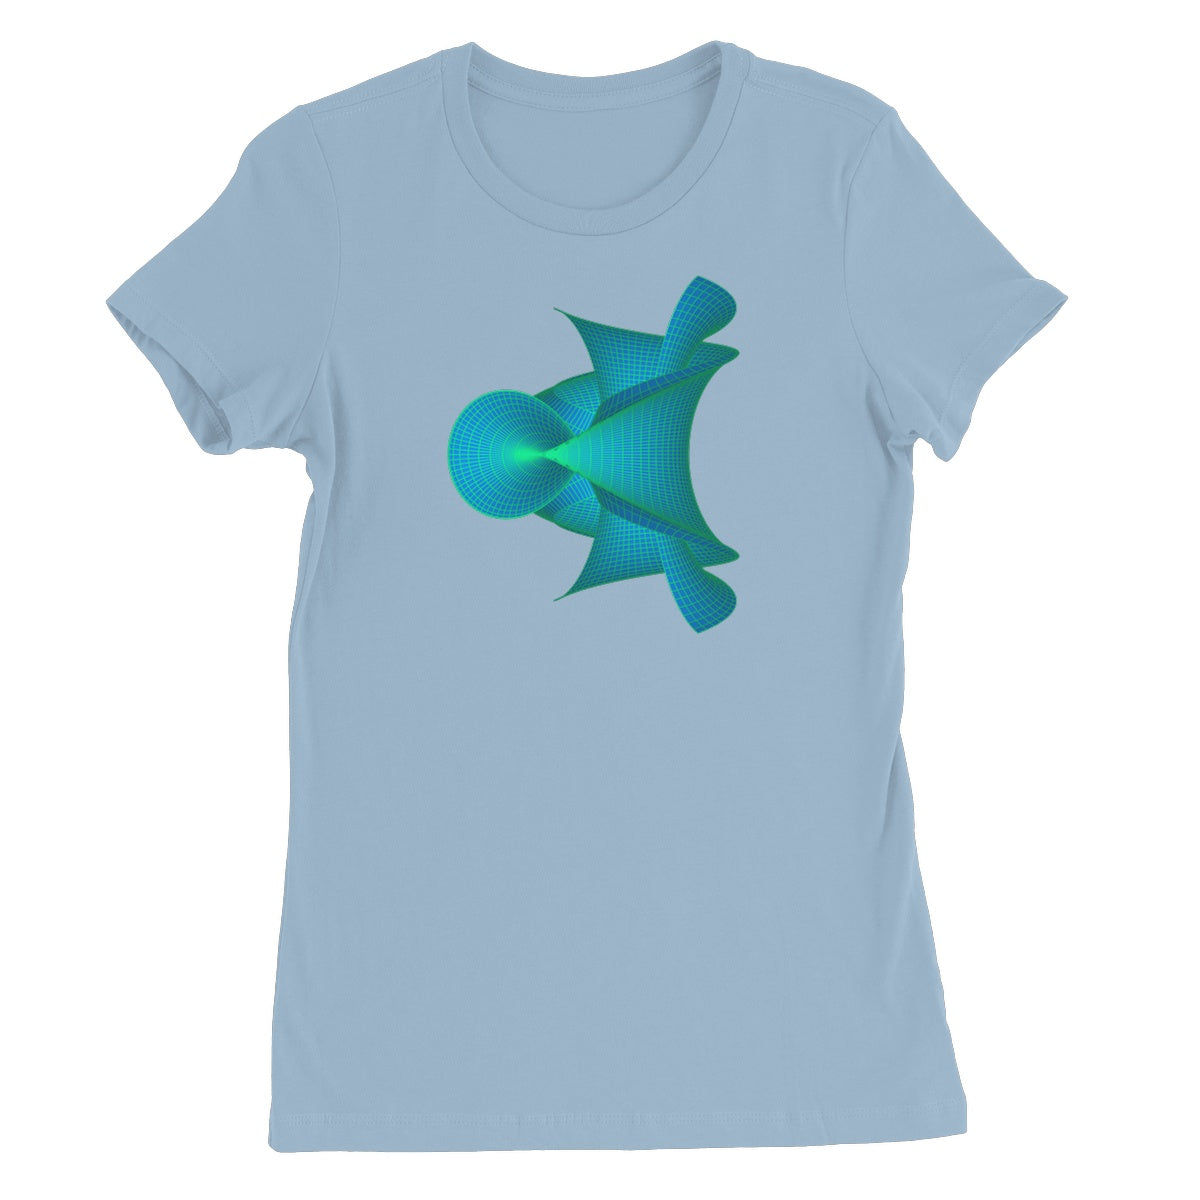 Kuen's Surface, Aqua Women's Favourite T-Shirt